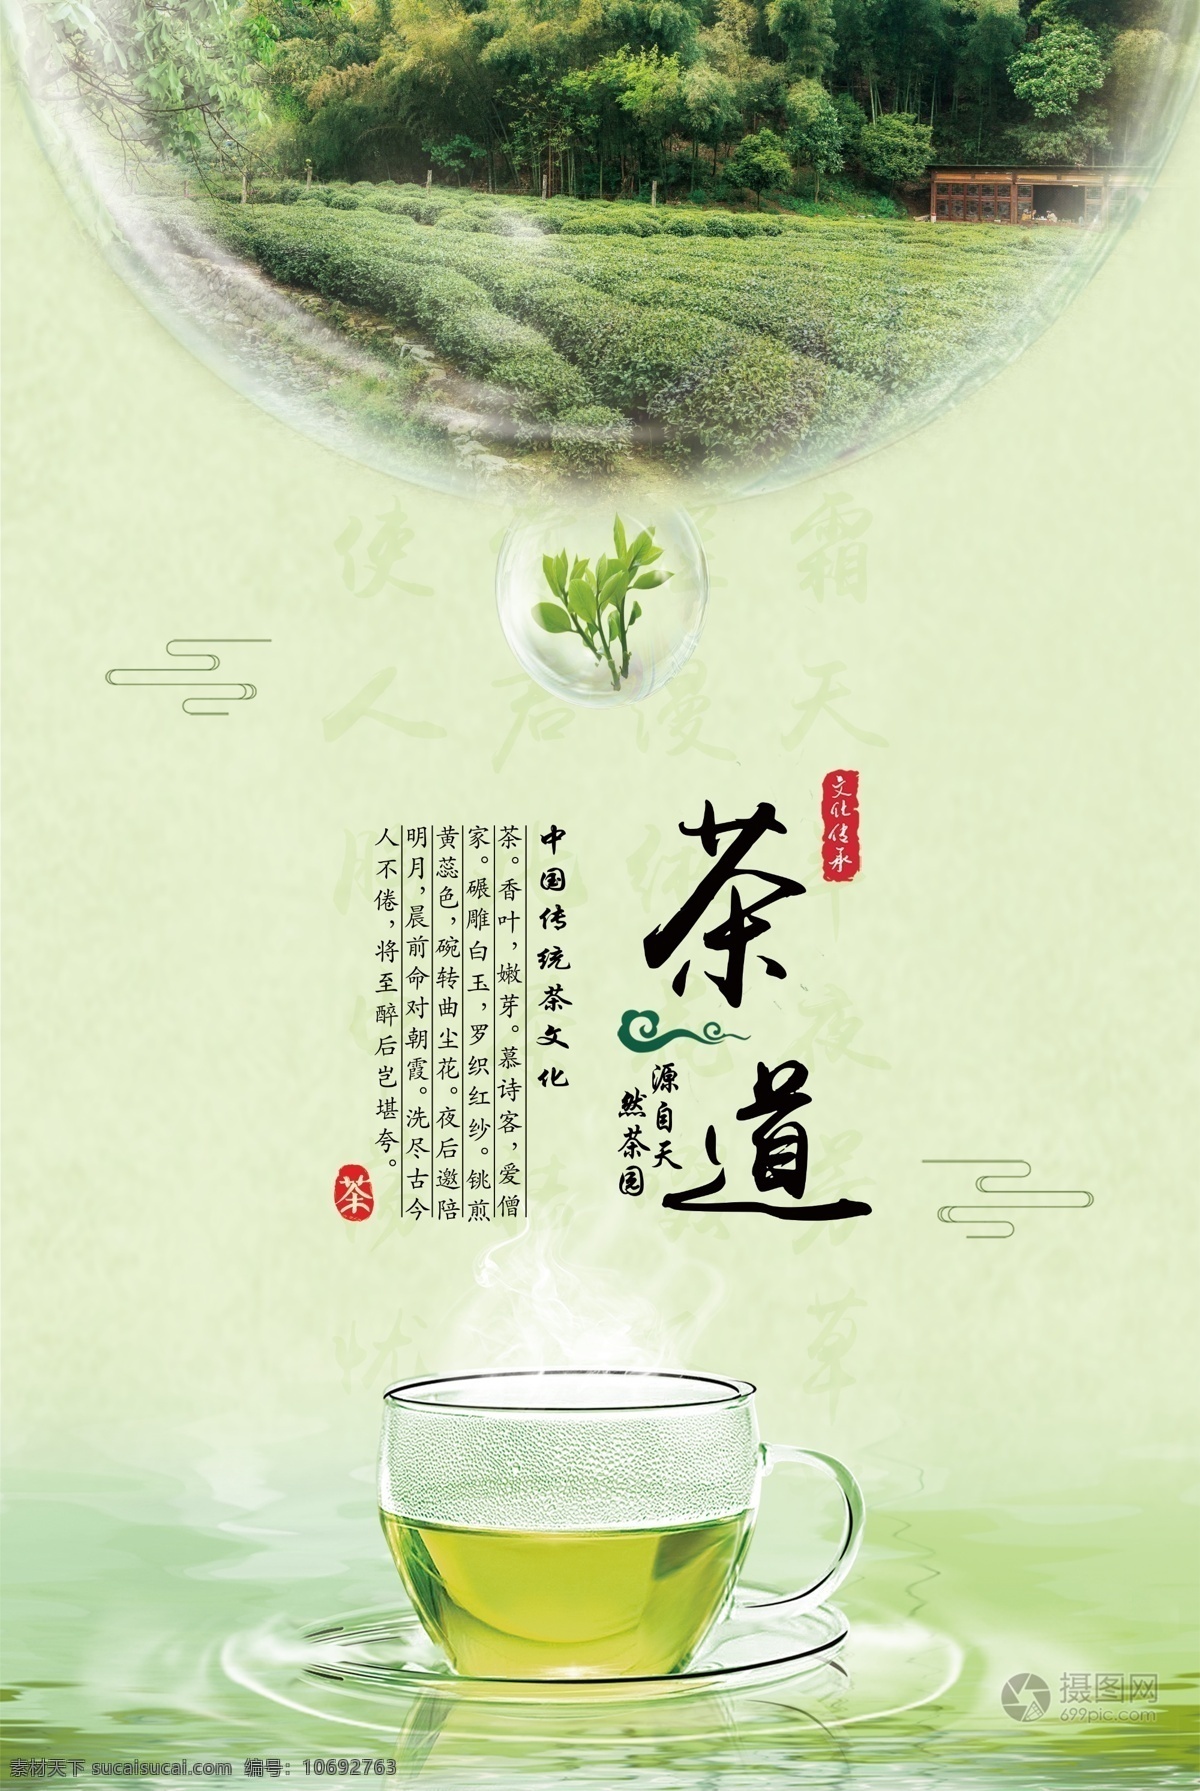 茶道海报 茶文化 茶道 红茶 绿茶 海报宣传 茶海报 茶 茶叶 海报